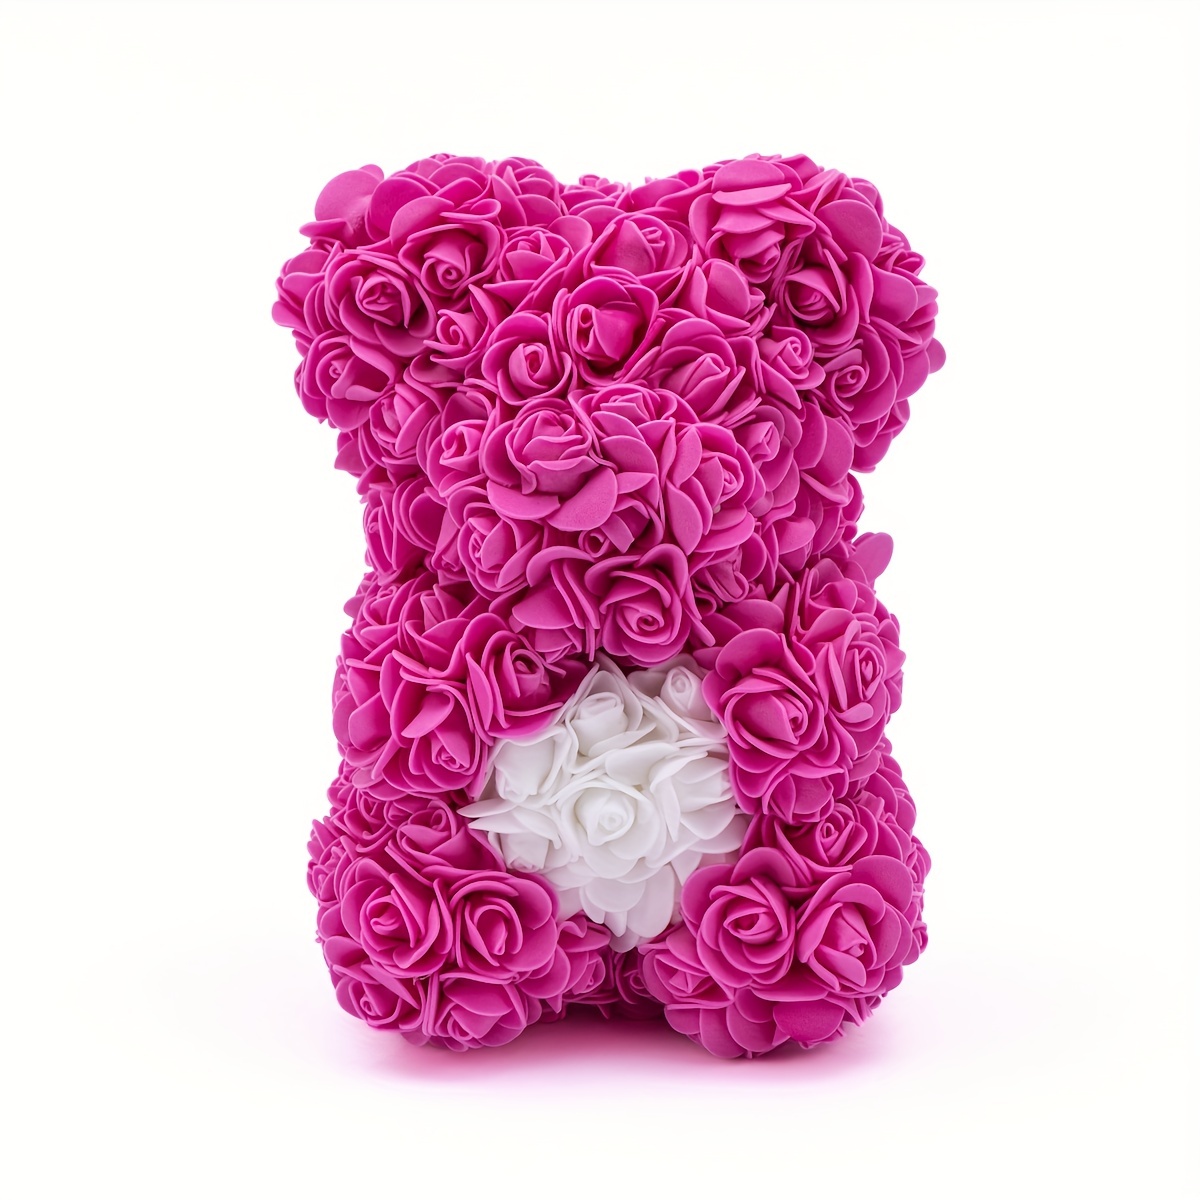 Prodotto: B092799C5 - Teddy Bear Orsetto di Rosa realizzato con le rose  sintetiche RAEGLO PER SAN VALENTINO (25 cm - Rosso ) - MW (ARREDAMENTO -  SAN VALENTINO);